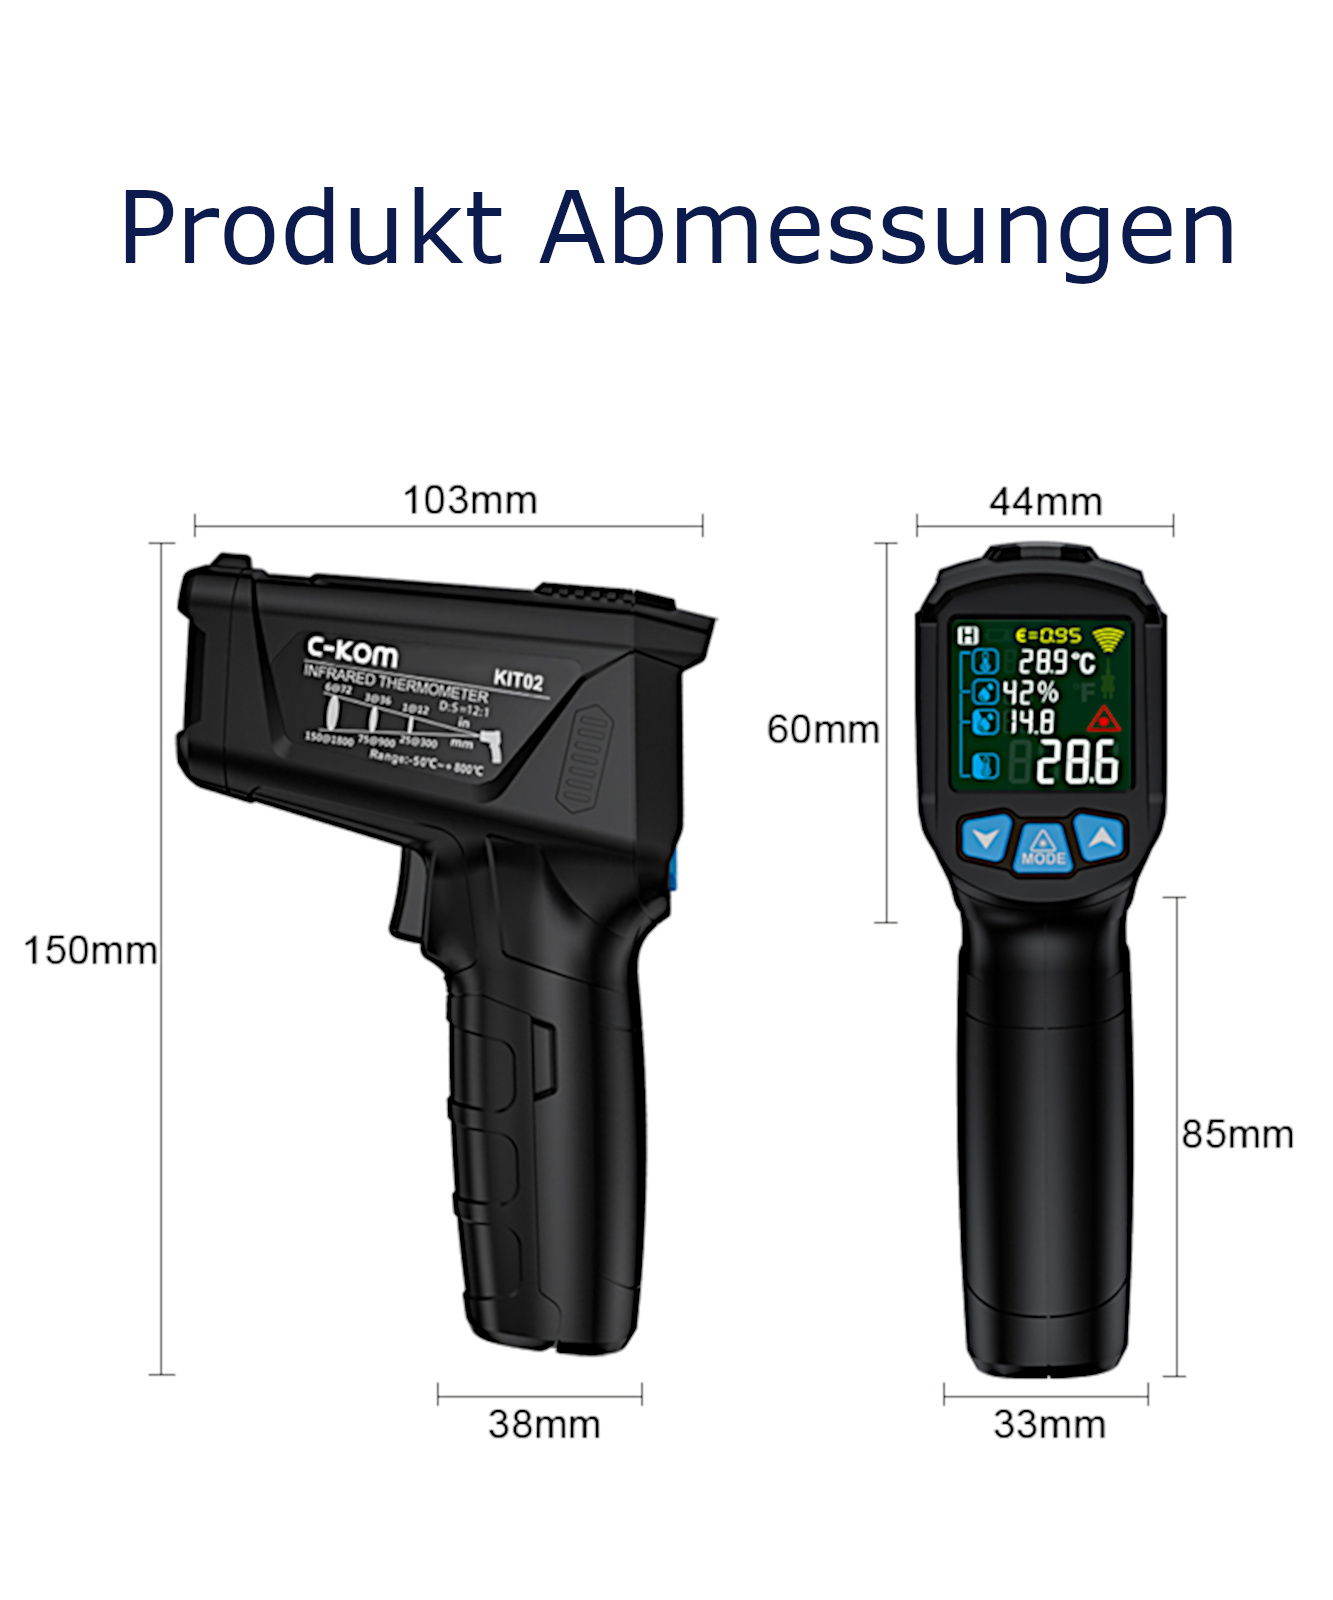 KIT02 Infrarot Thermometer mit Zusatzfühler, 12:1, -50-800°C